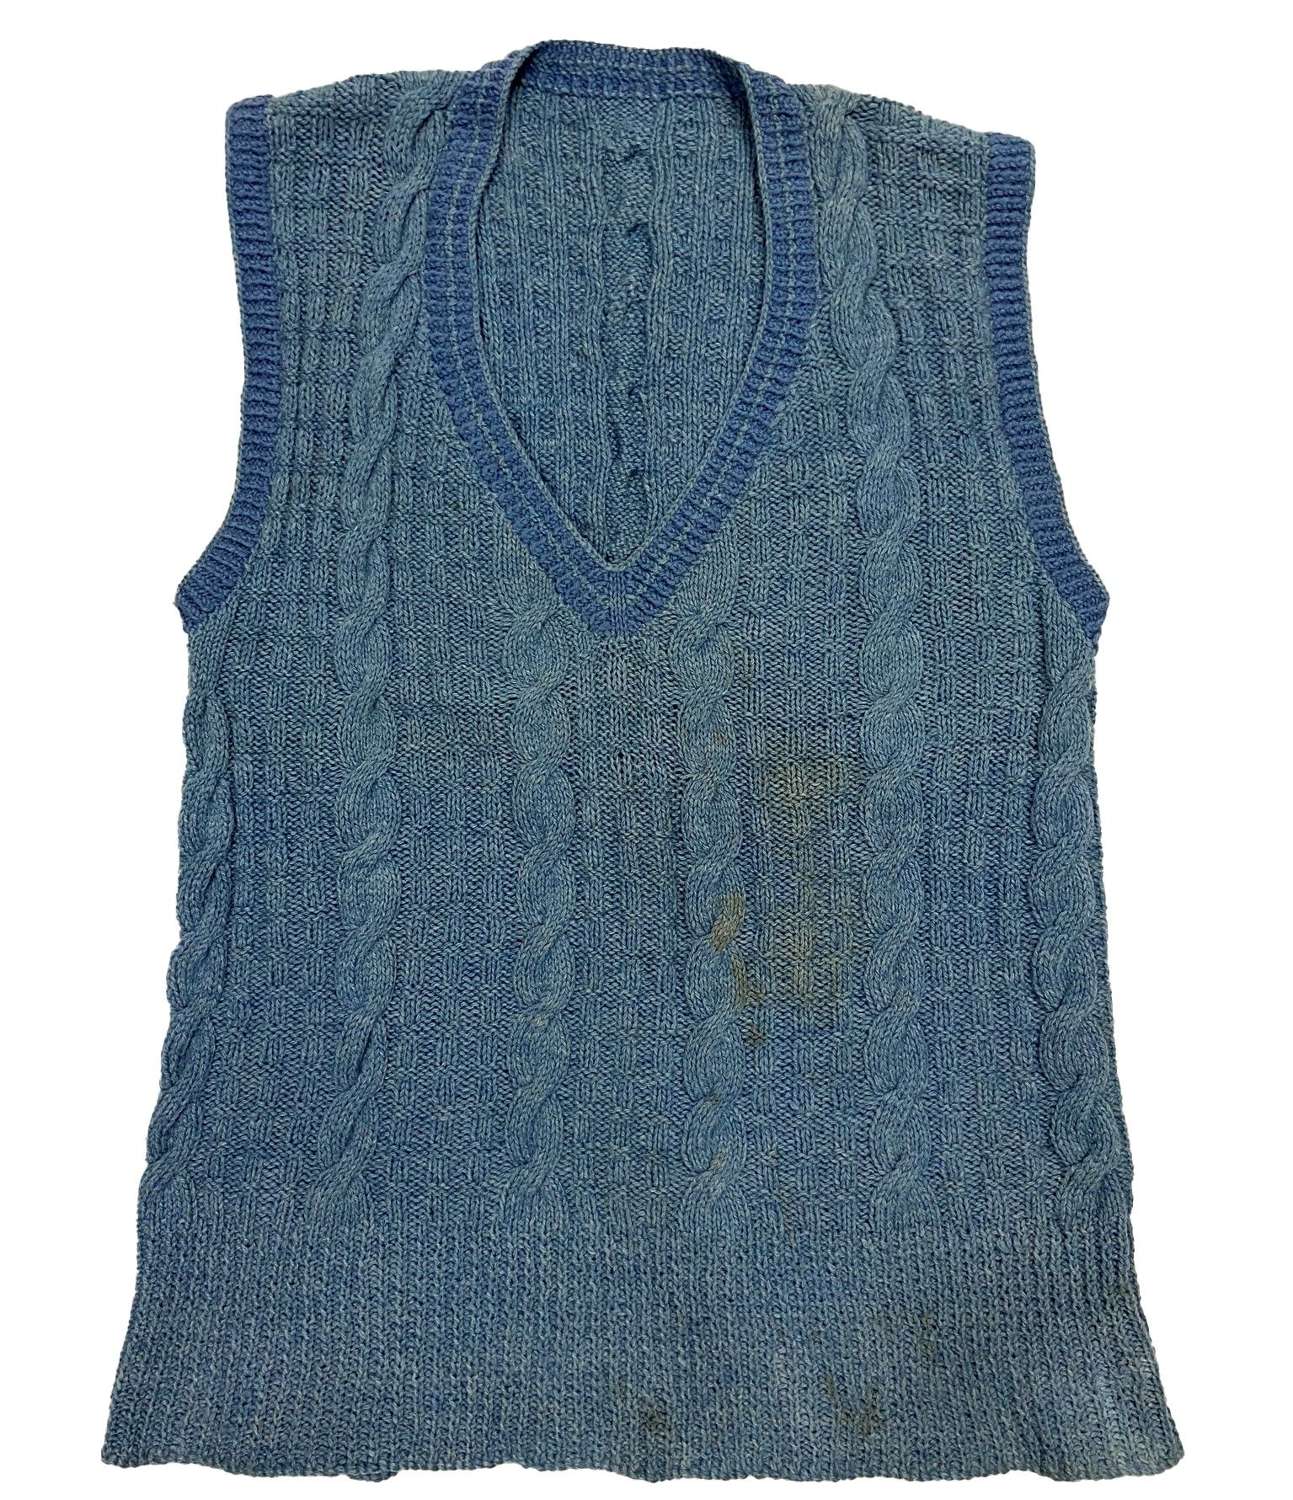 Original c.1940s Men's Blue Wool Sleeves Jumper - Large